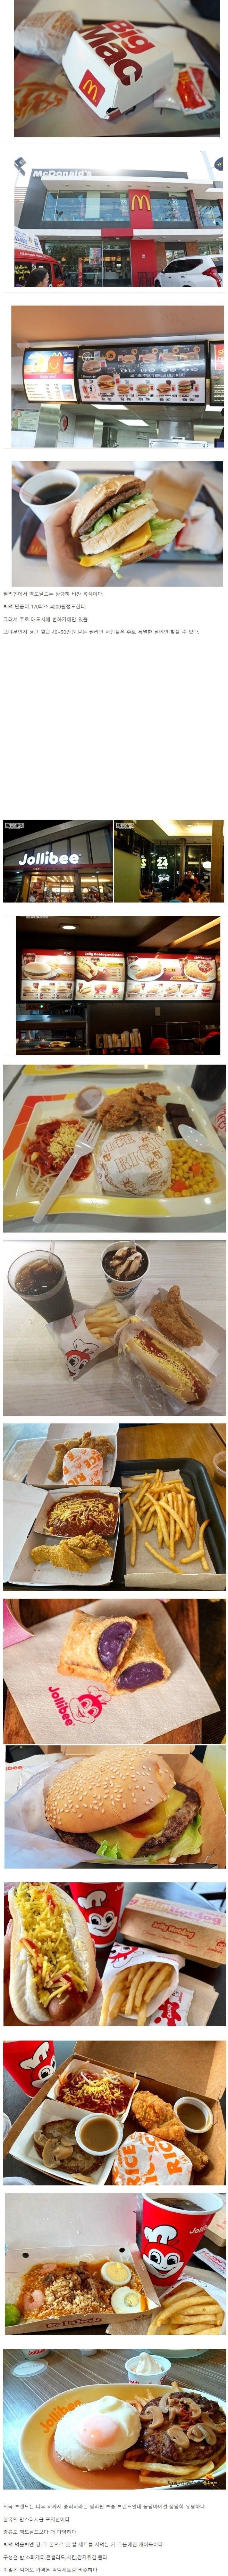 필리핀에서 맥도날드가 망한 이유.jpg | 인스티즈